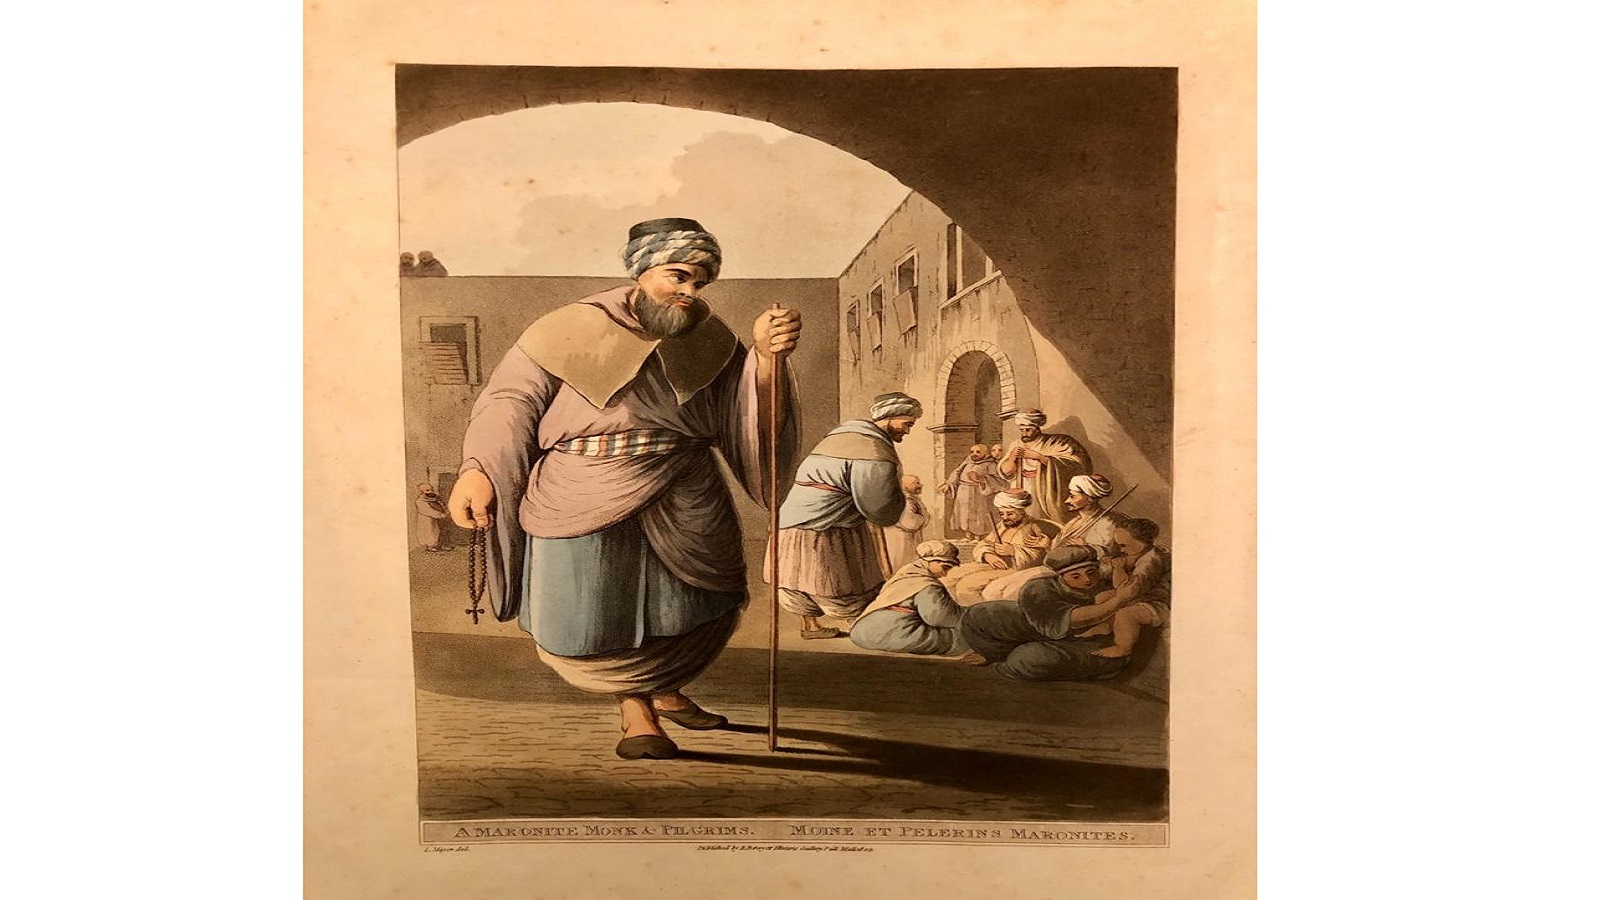 ليتوغرافيا عام 1803 لراهب ماروني مع مجموعة من الحجاج الموارنة للويجي ماير يرجح ان يكونوا في زيارة الى القدس